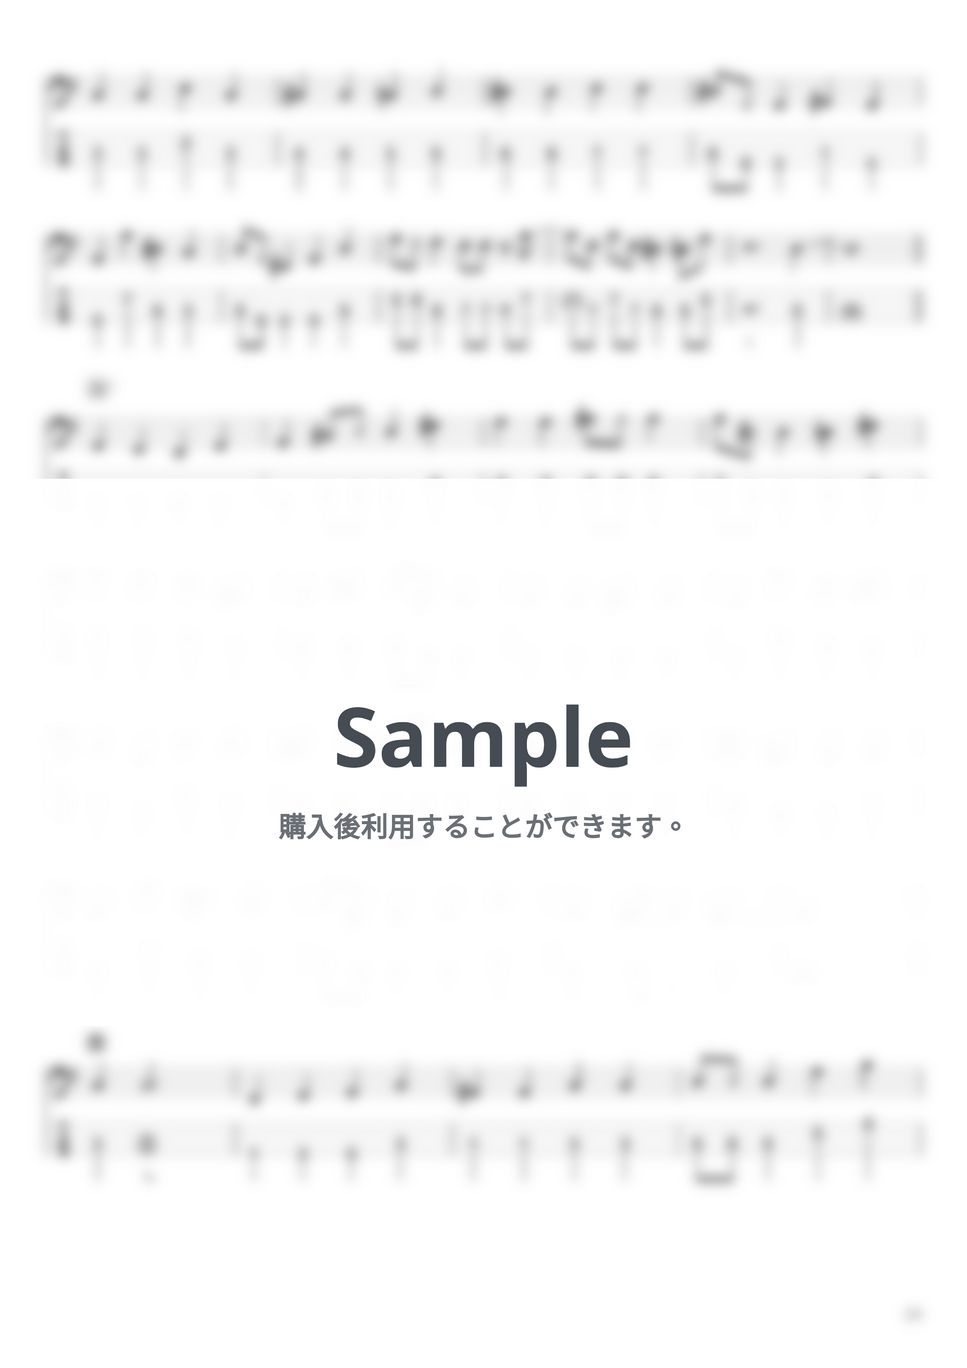 大野雄二 - ルパン三世 ’80 (ベースTAB譜☆4弦ベース対応) by swbass